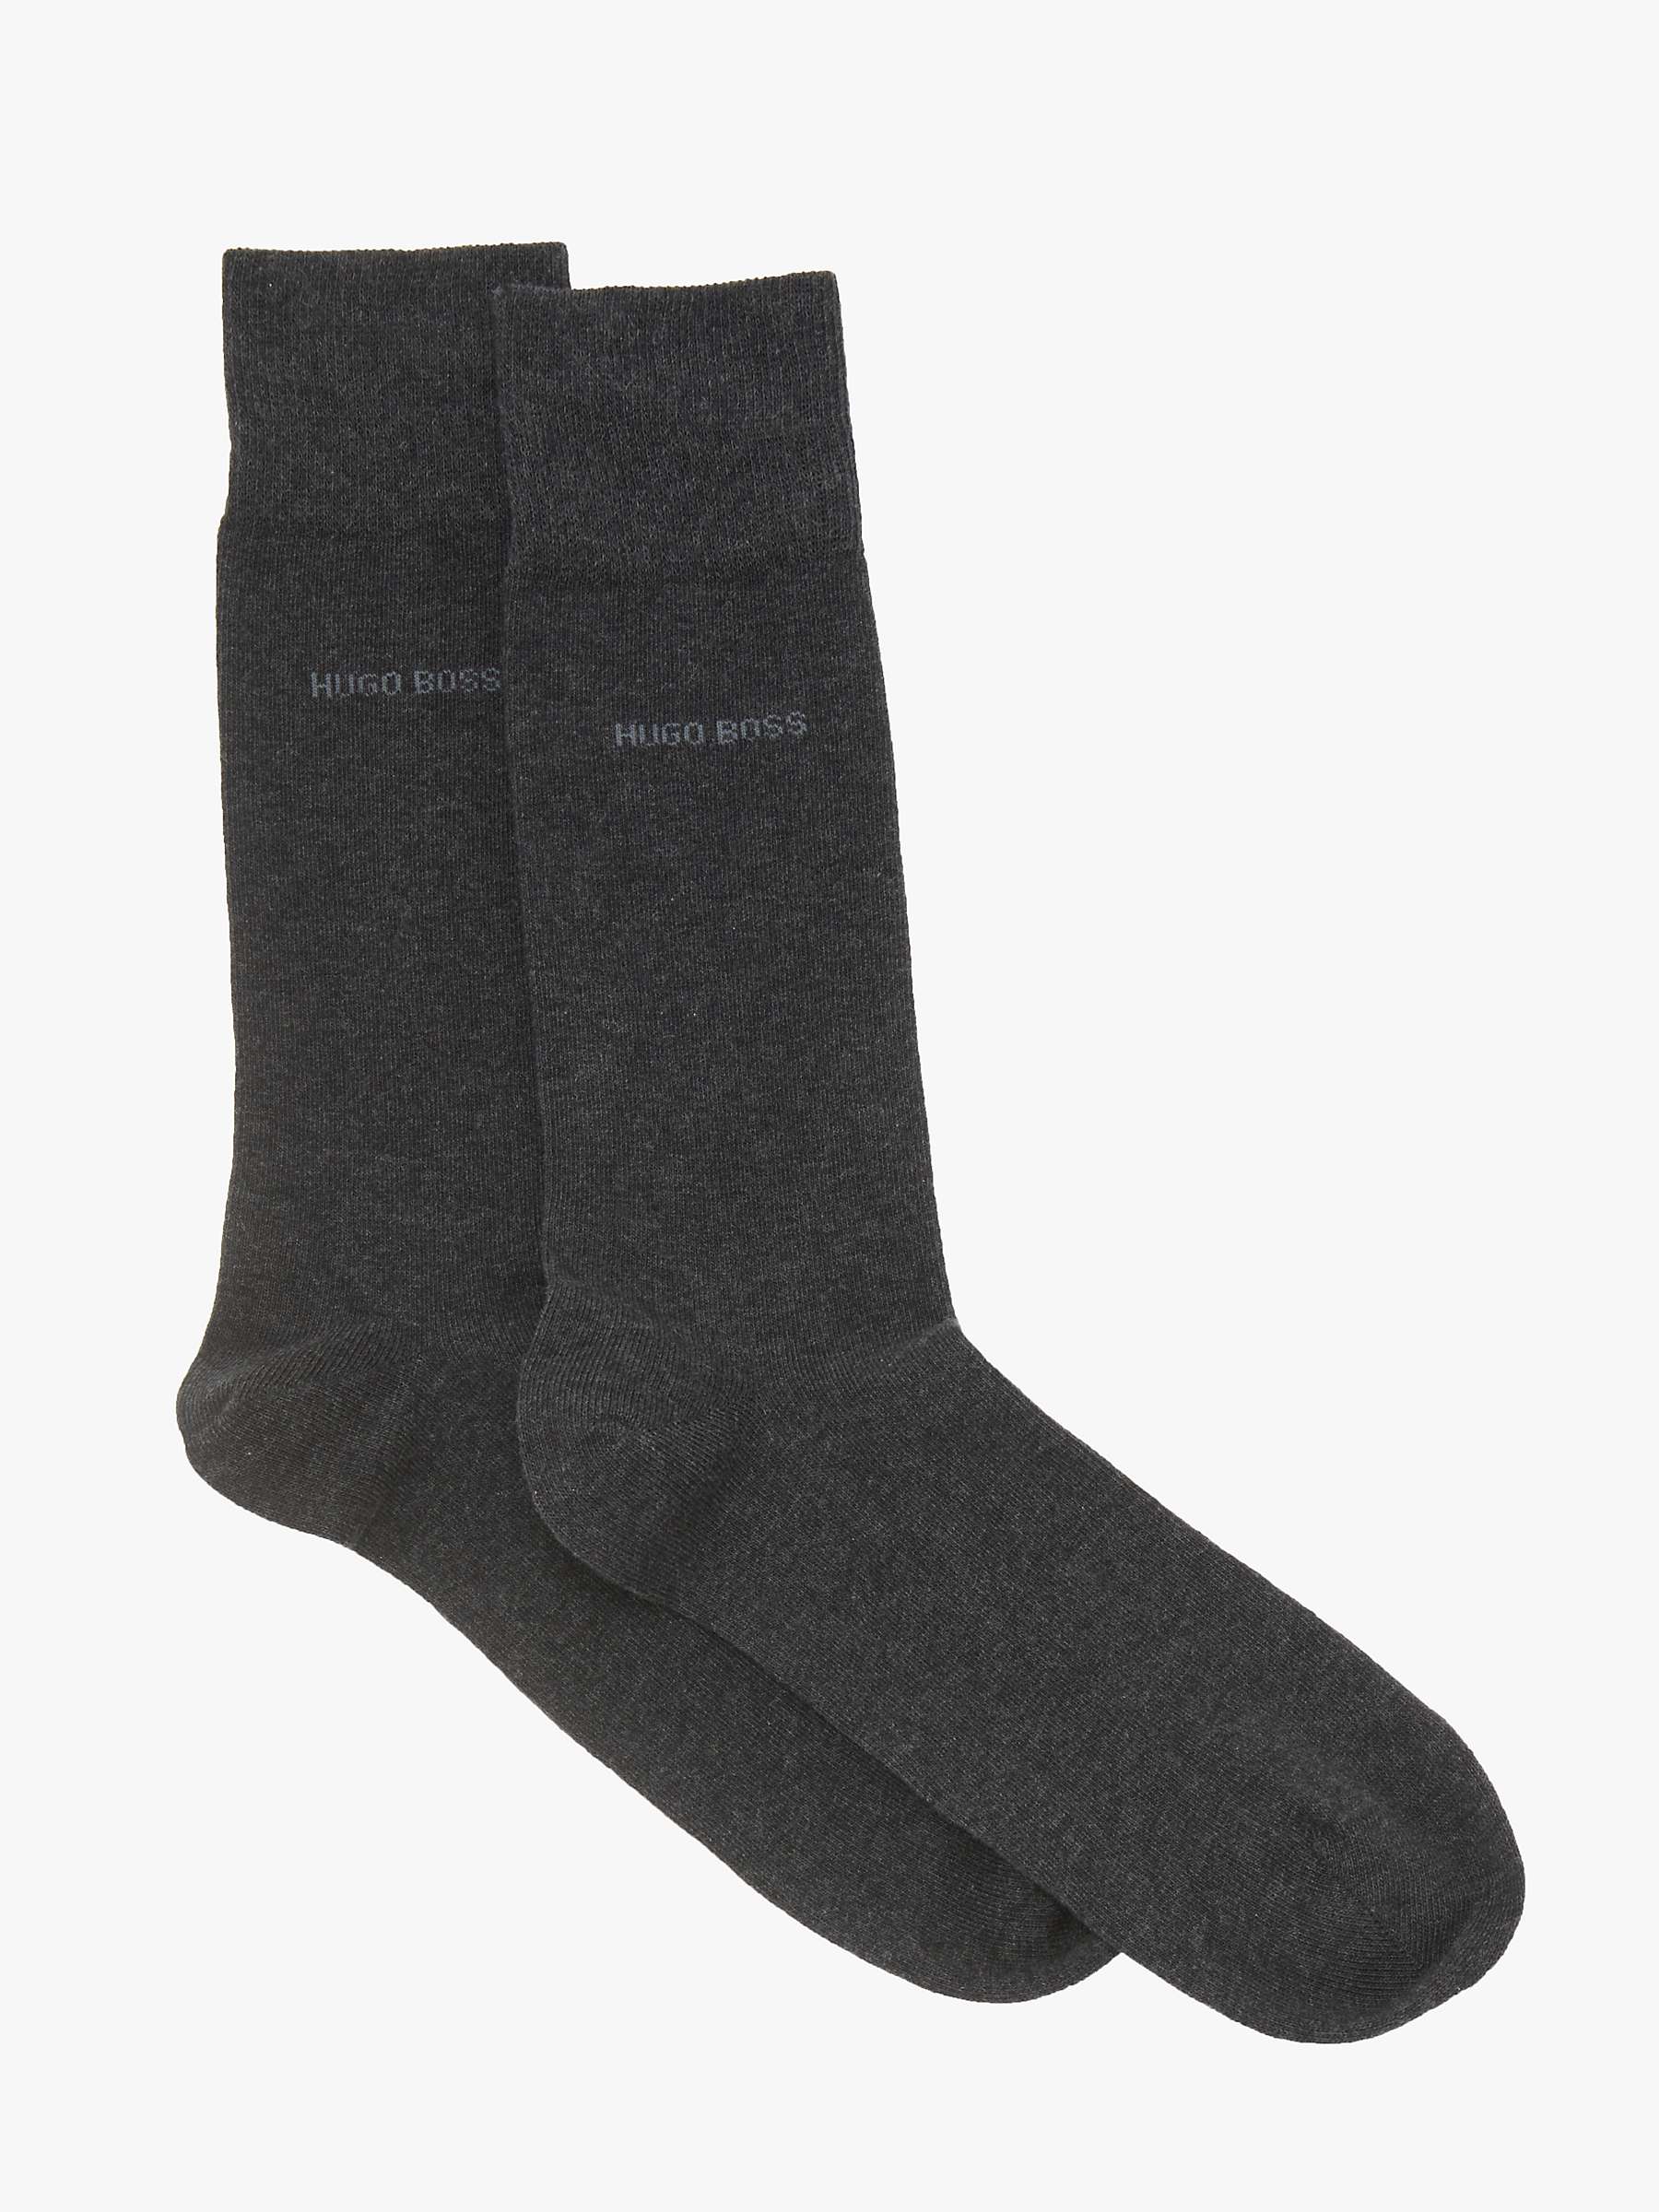 Buy BOSS Plain Socks, Pack of 2 Online at johnlewis.com